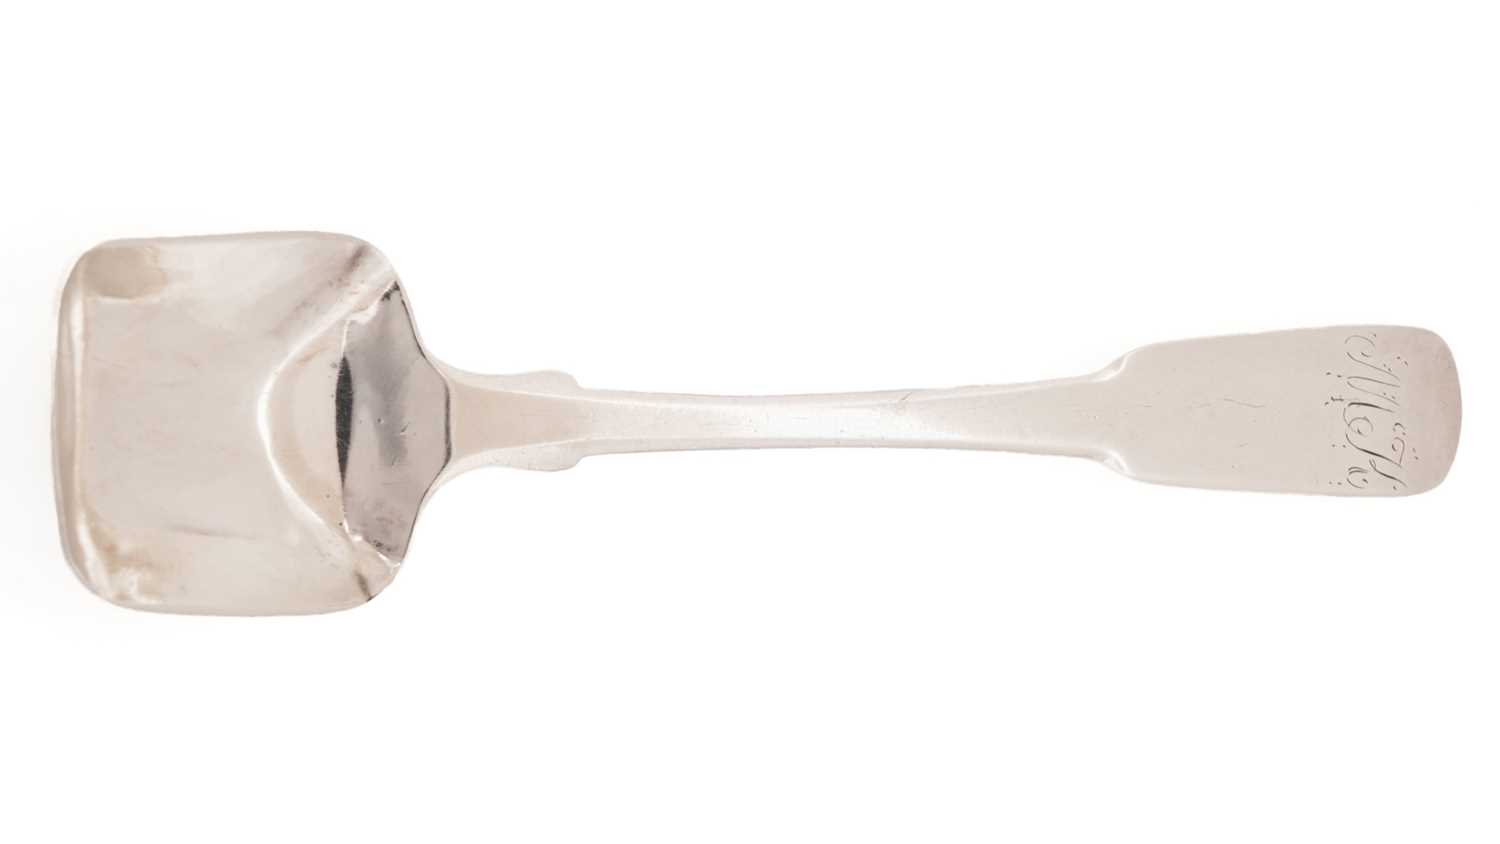 Lot 25 - A sugar spoon by George Elder, Banff